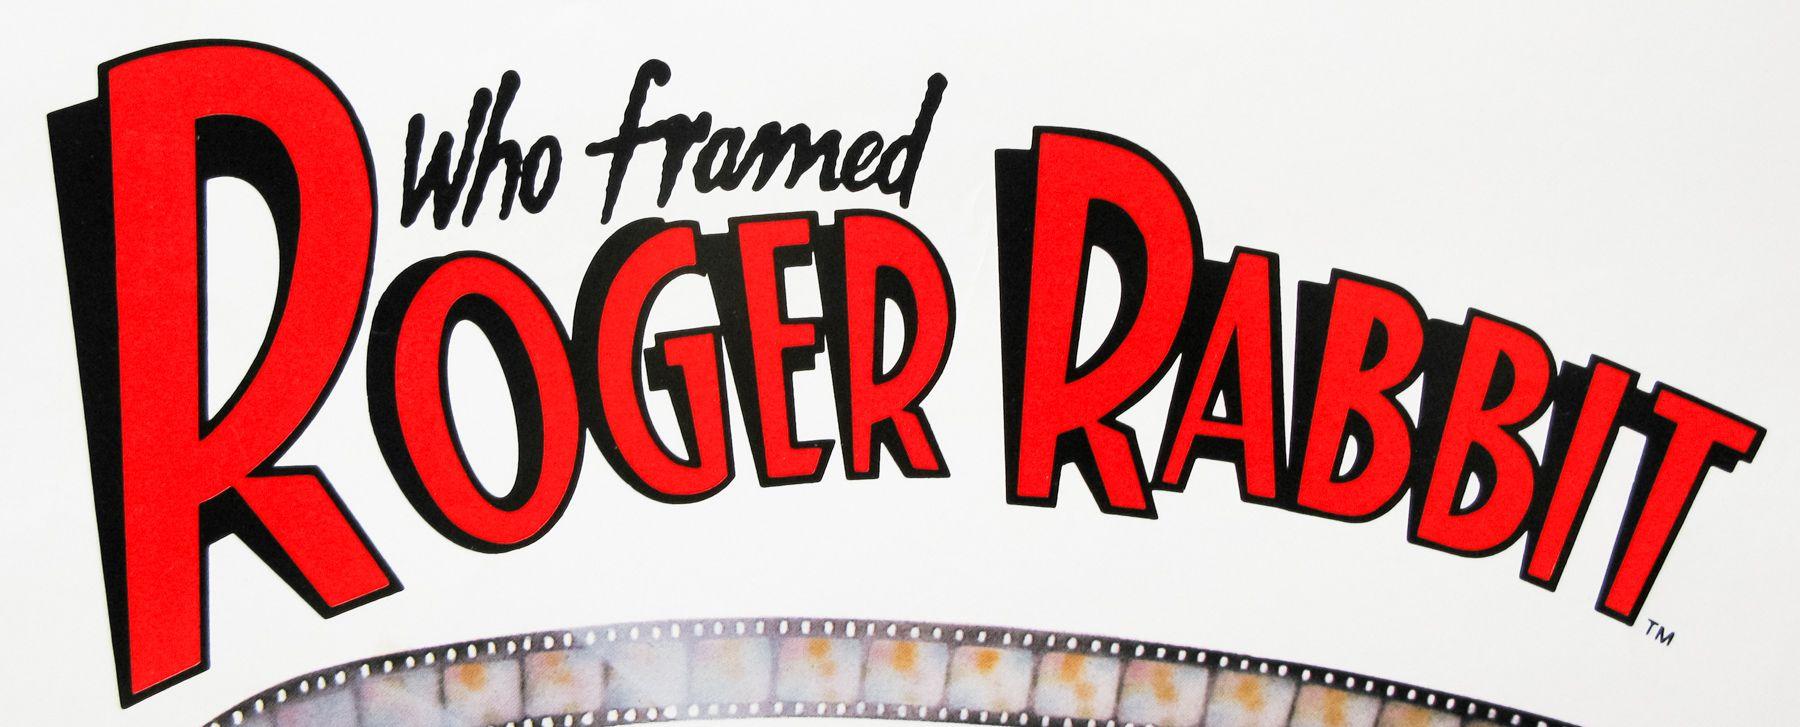 Roger Rabbit Logo - Who Framed Roger Rabbit / one sheet / USA